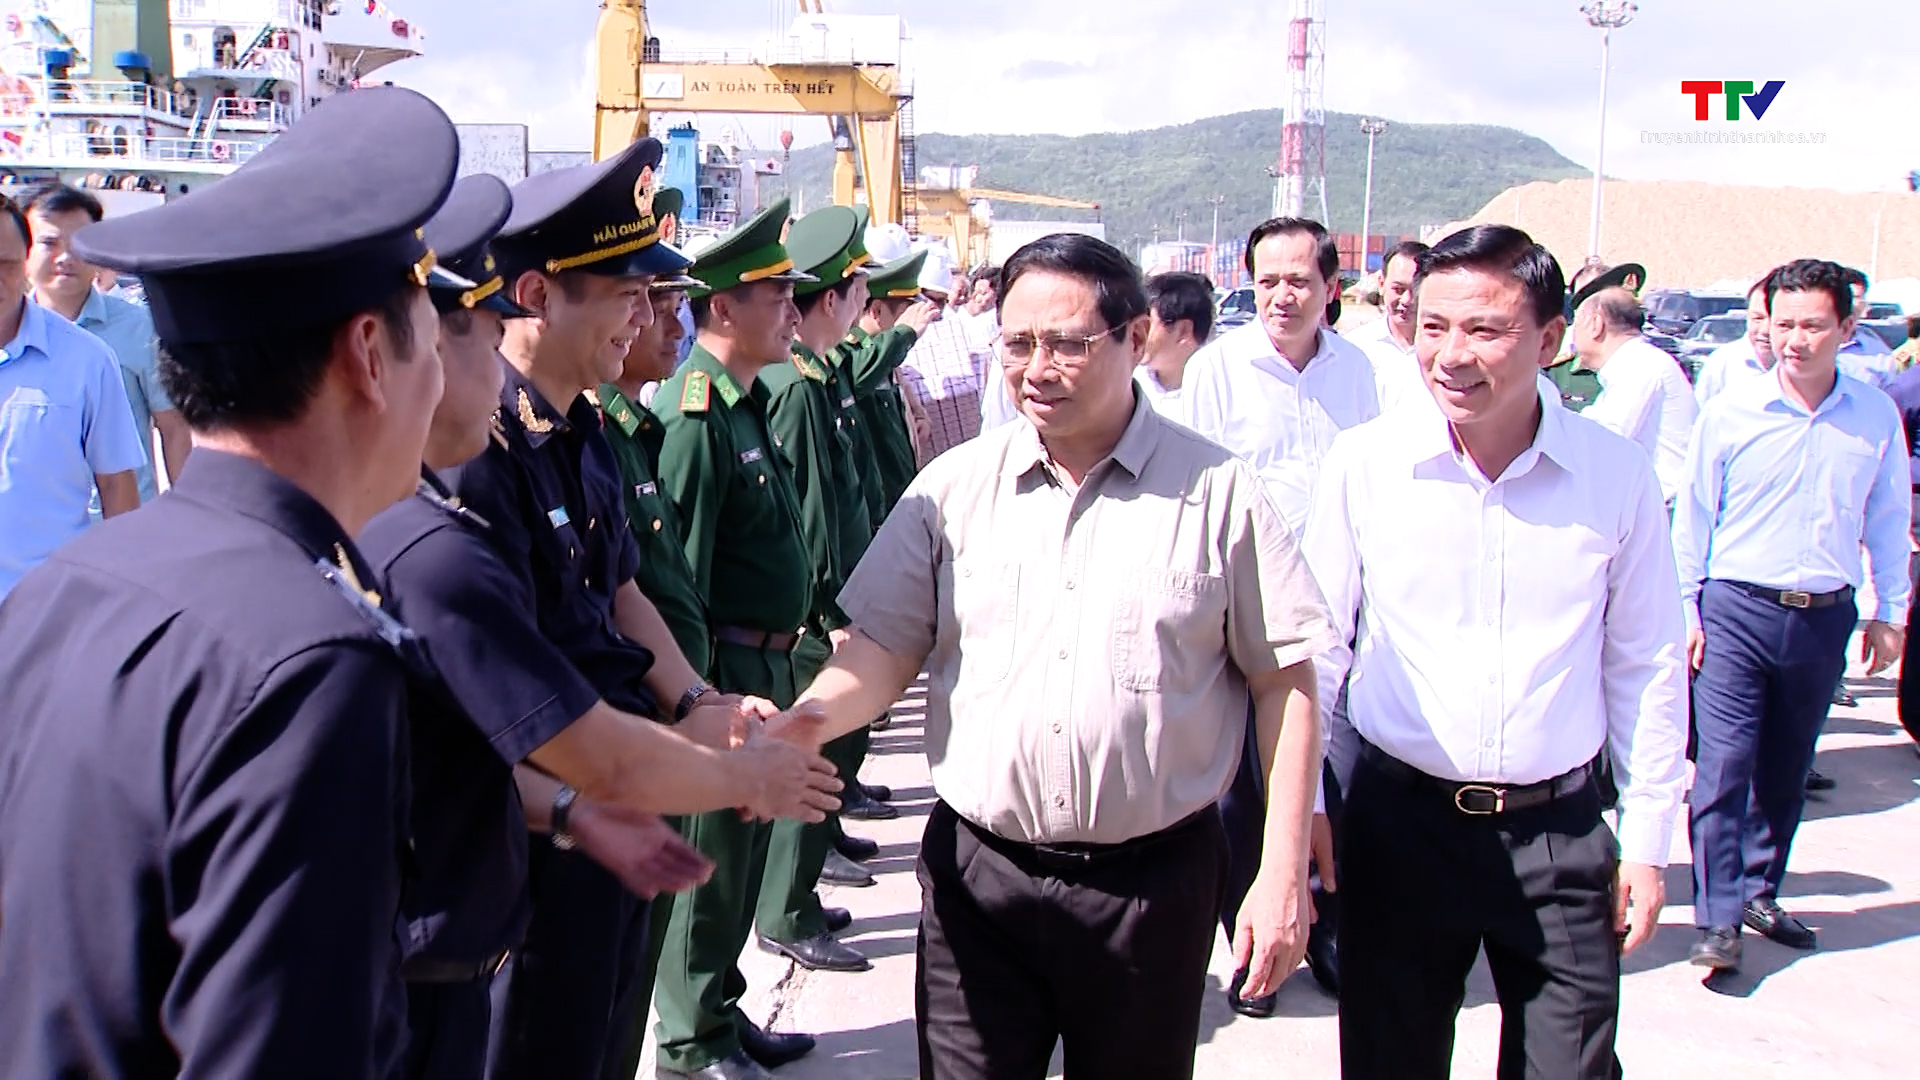 Thủ tướng Chính phủ Phạm Minh Chính làm việc với tỉnh Thanh Hóa về tình hình kinh tế - xã hội, quốc phòng - an ninh, công tác xây dựng Đảng và hệ thống chính trị - Ảnh 2.